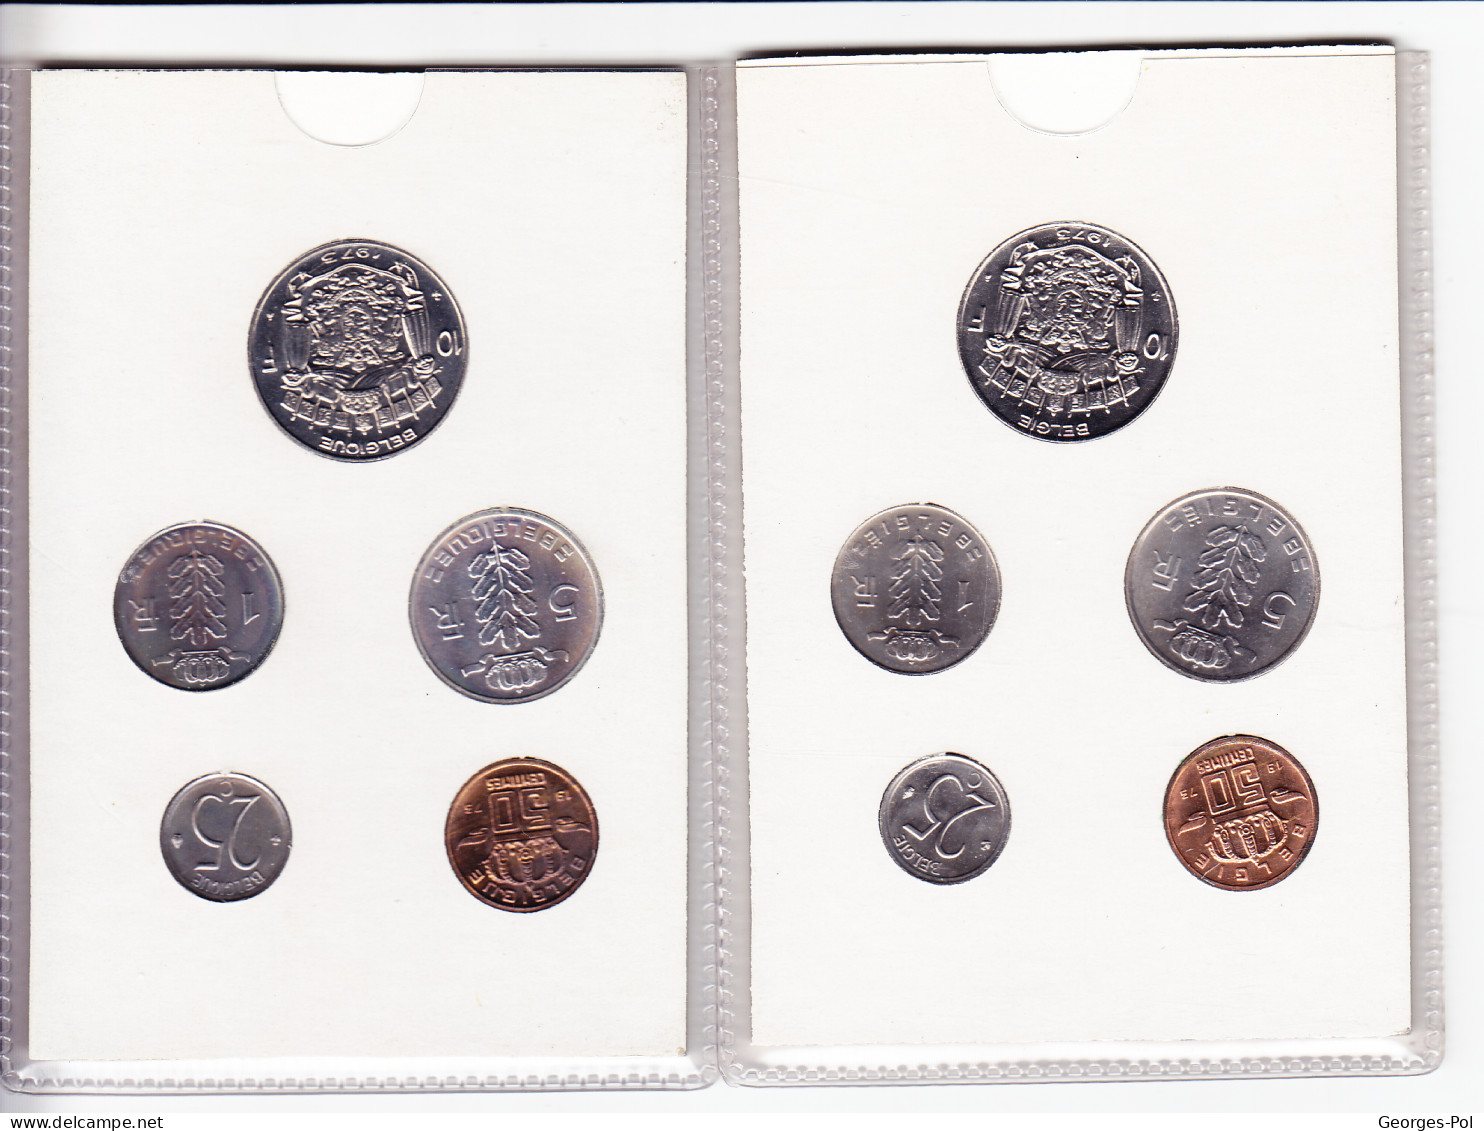 Monnaie Royale De Belgique 1973 Koninklijke Munt Van België. 2 Cartes De 5 Pièces Non Circulées - FDC, BU, Proofs & Presentation Cases